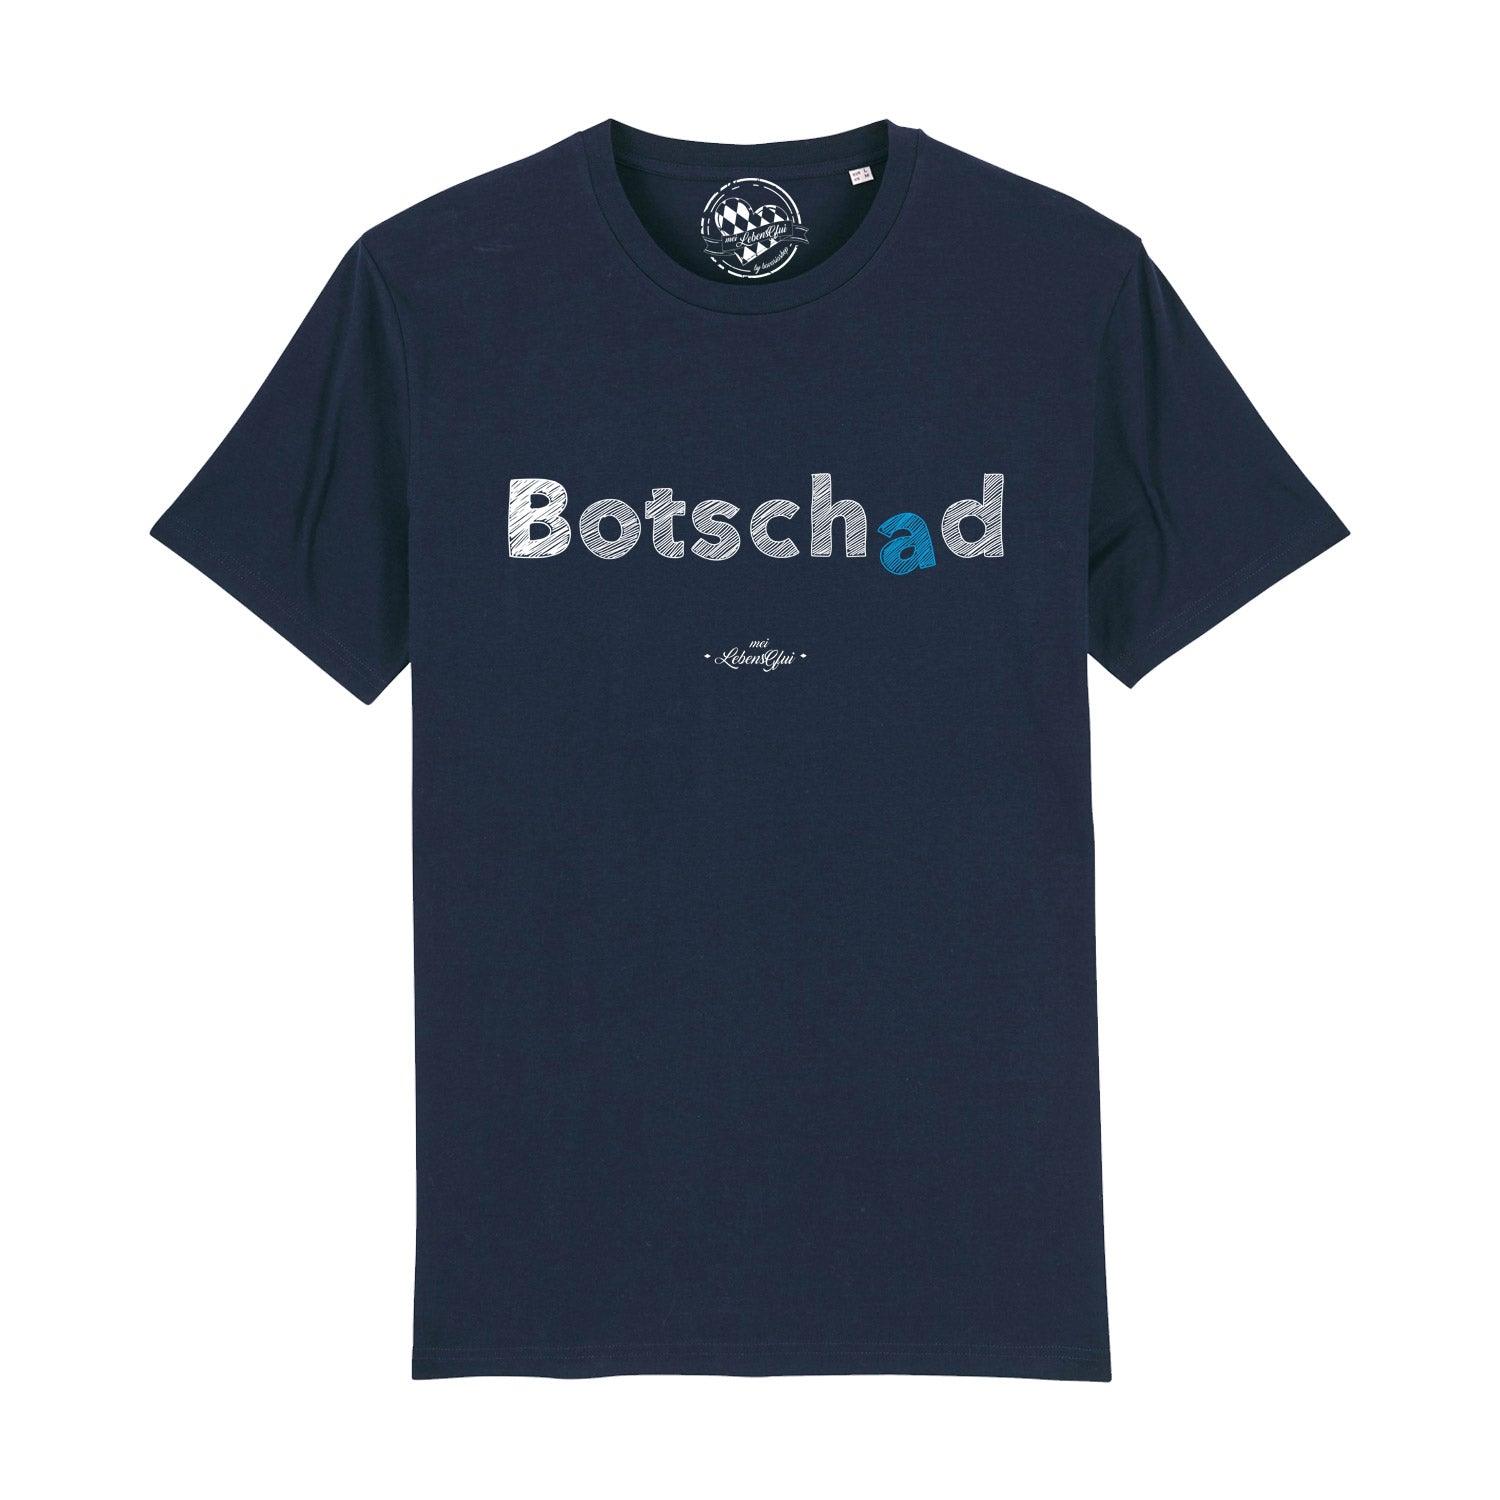 Herren T-Shirt "Botschad " - bavariashop - mei LebensGfui